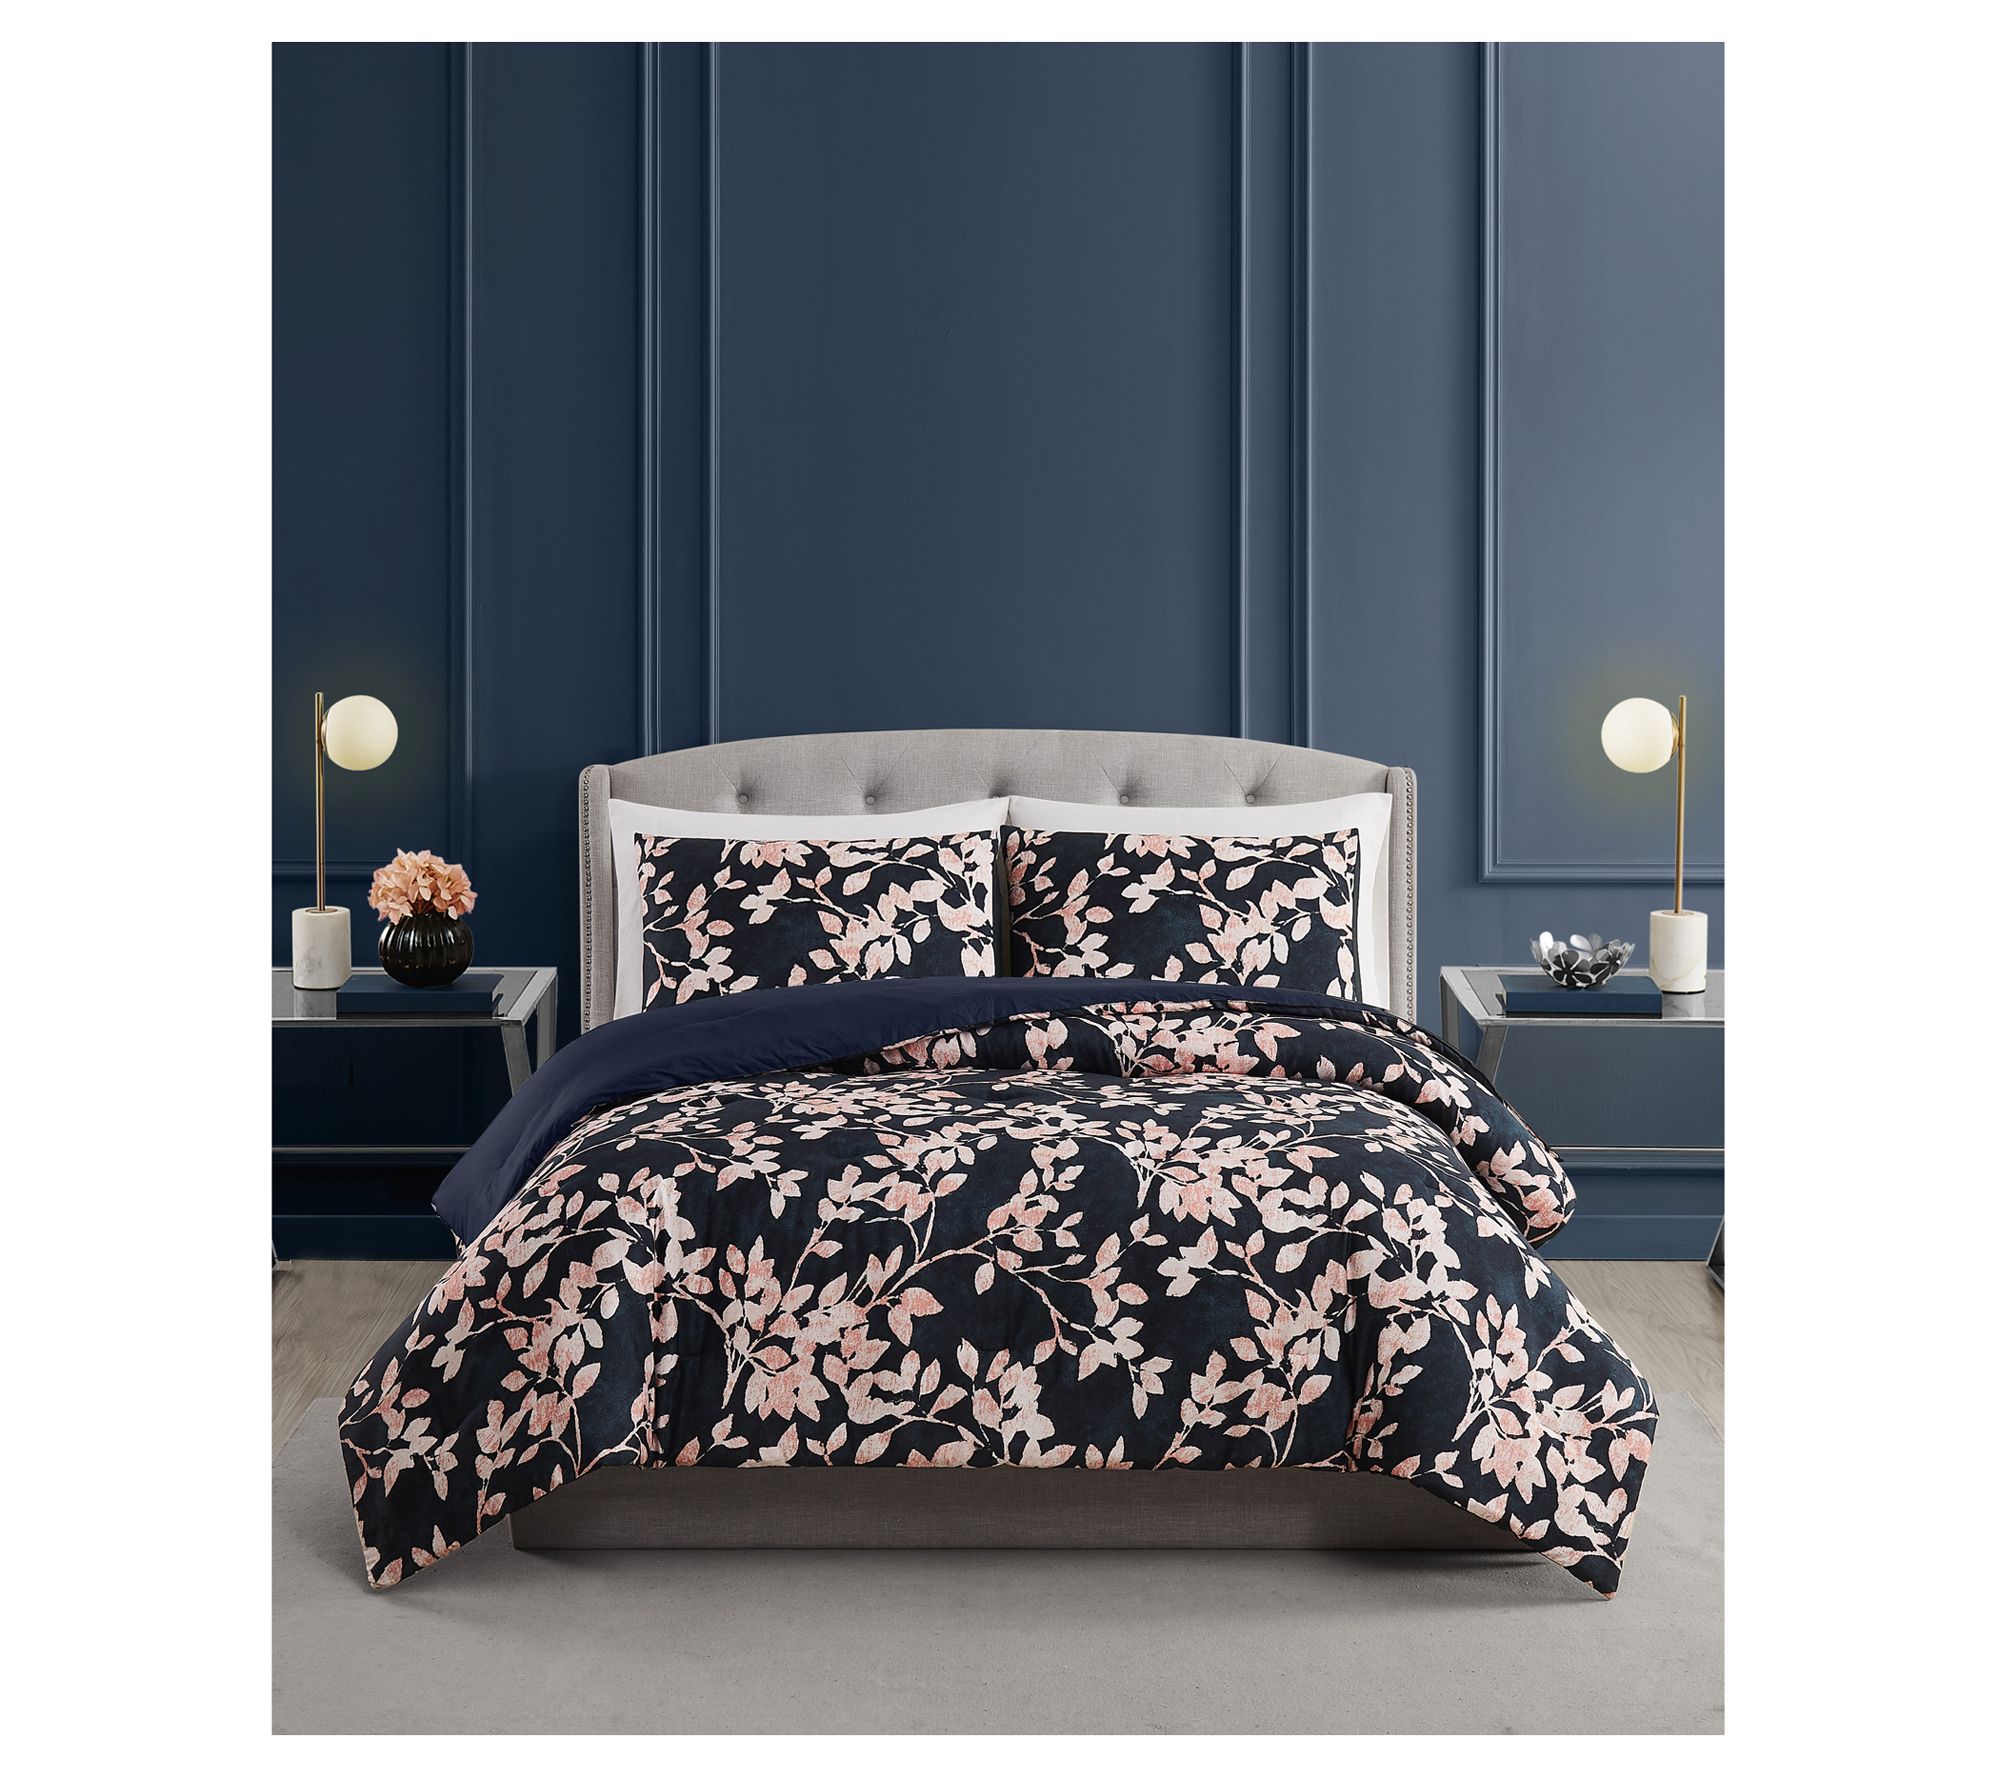 Lush Decor Floral Watercolor 7-Piece Comforter Set, Blue, King